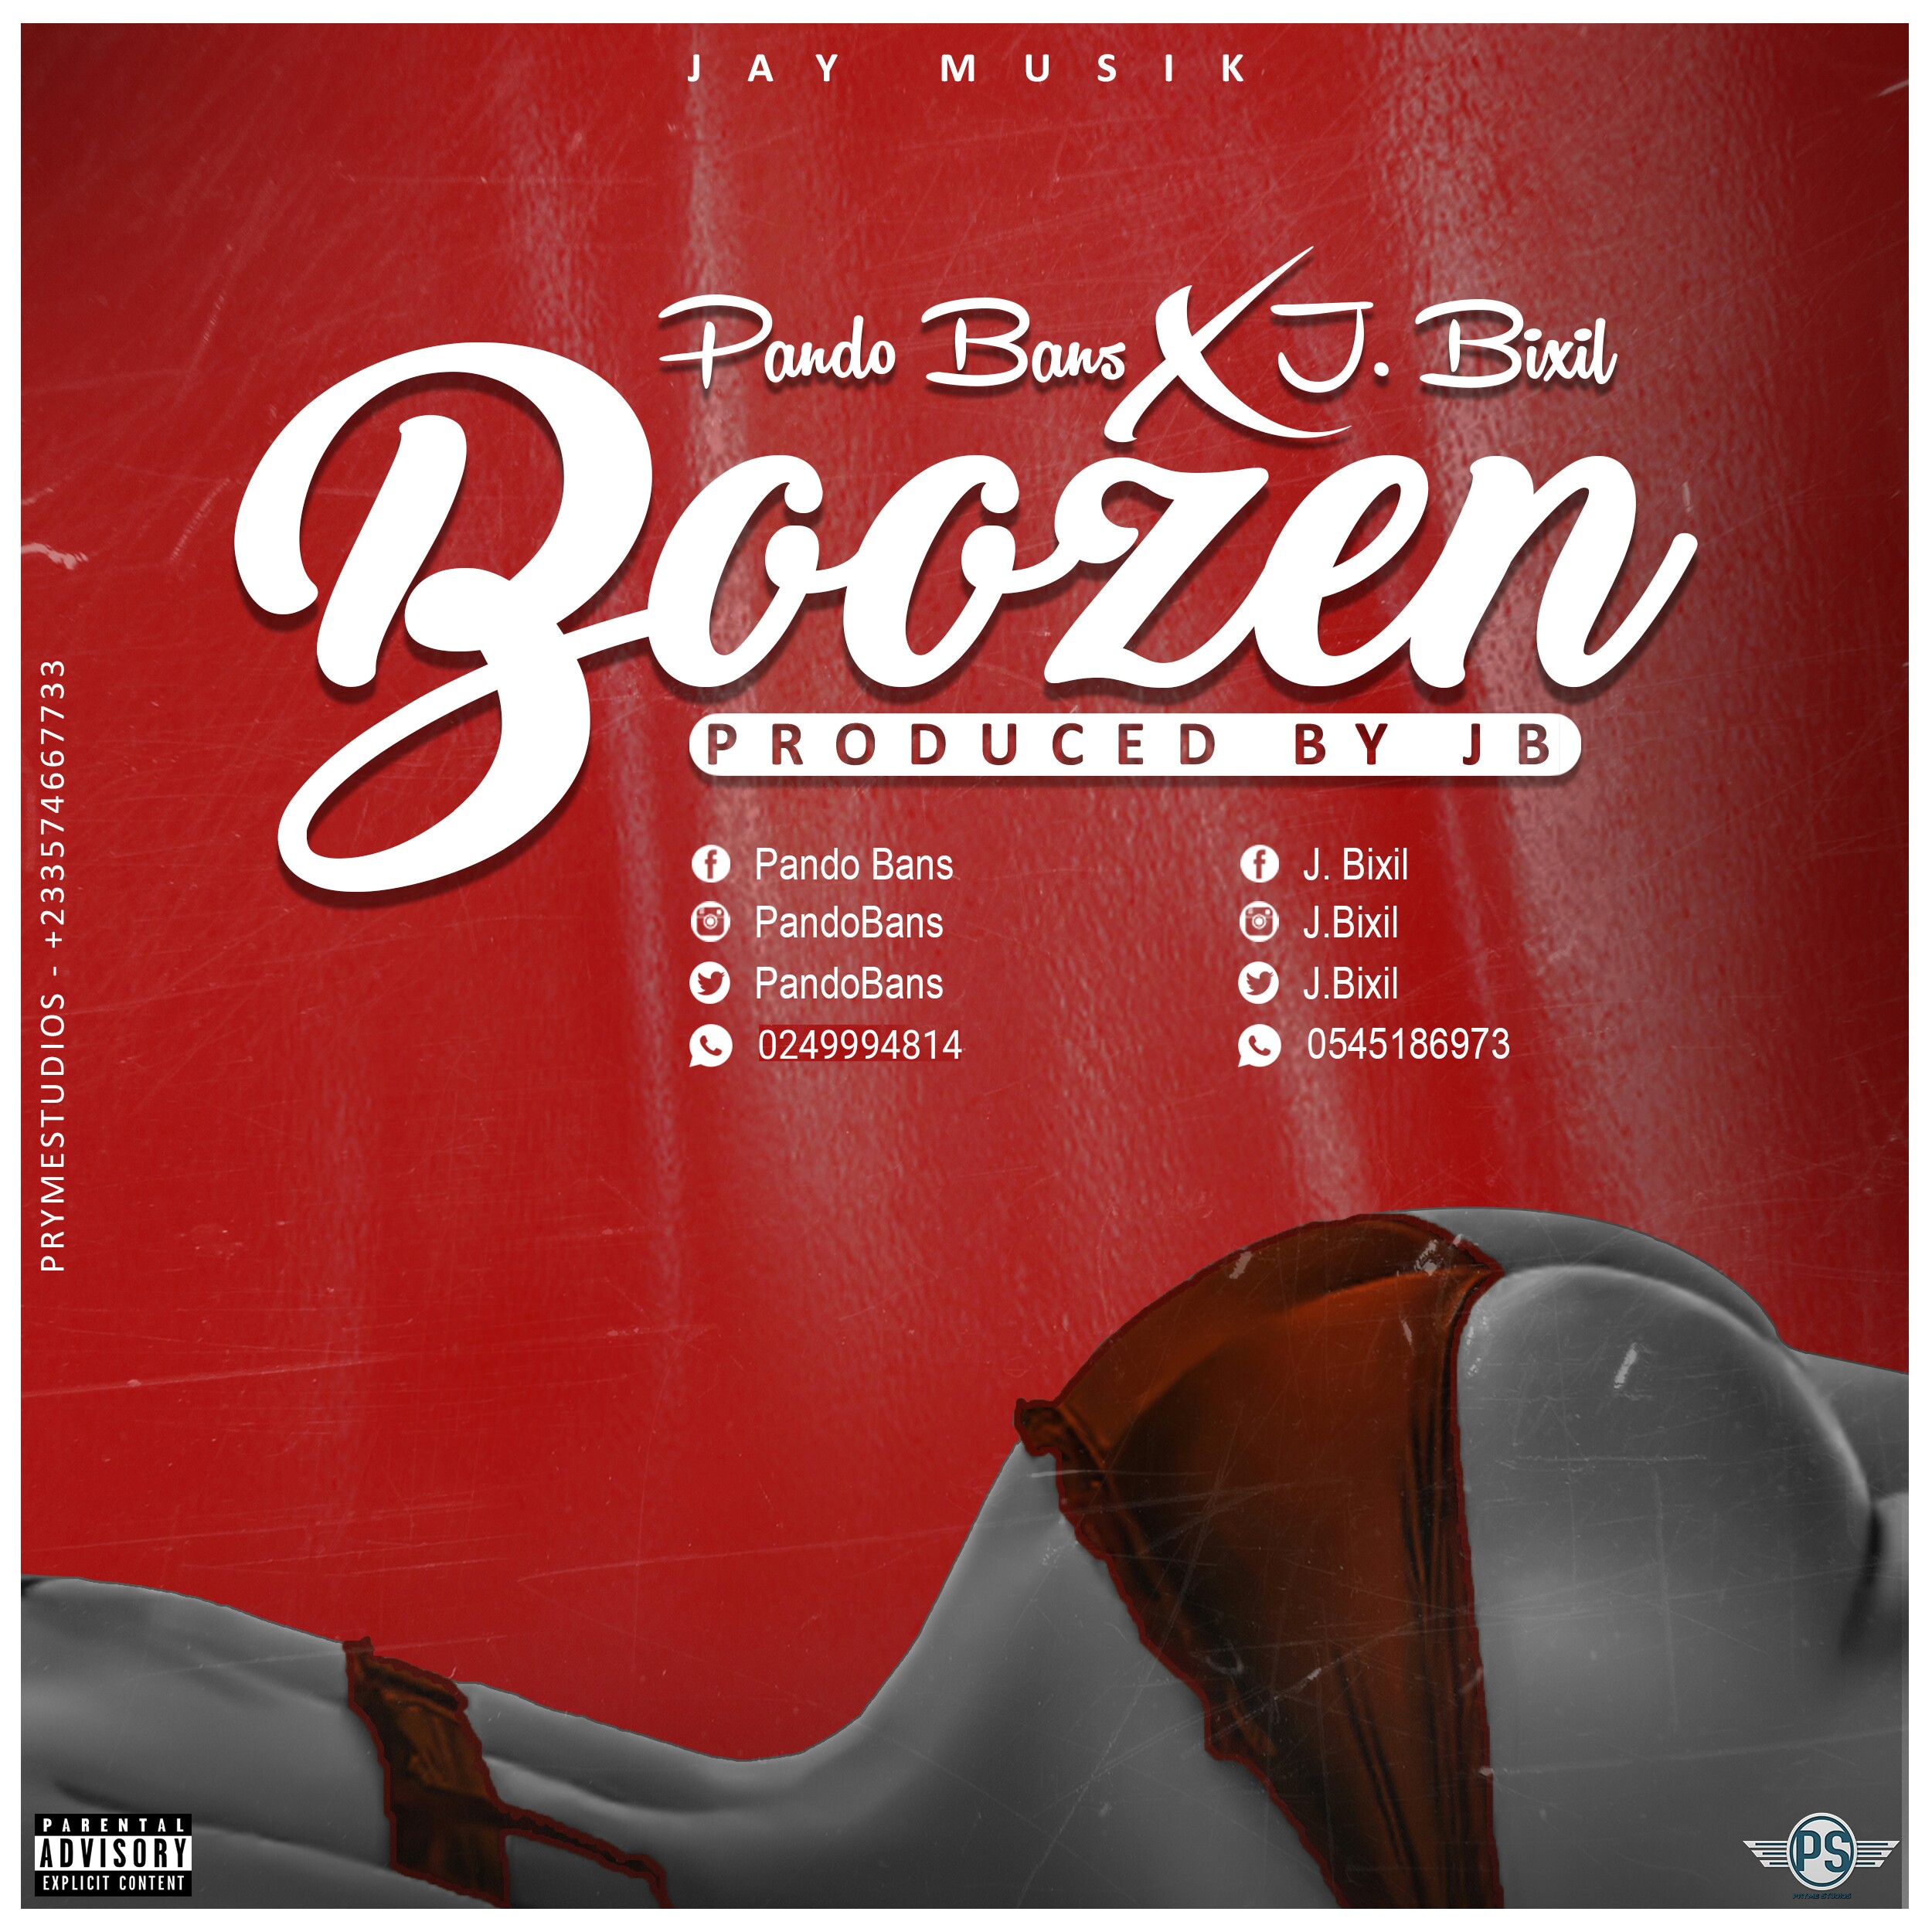 Pando Bans x J Bixil – Boozen (Prod By Jay Muzik)